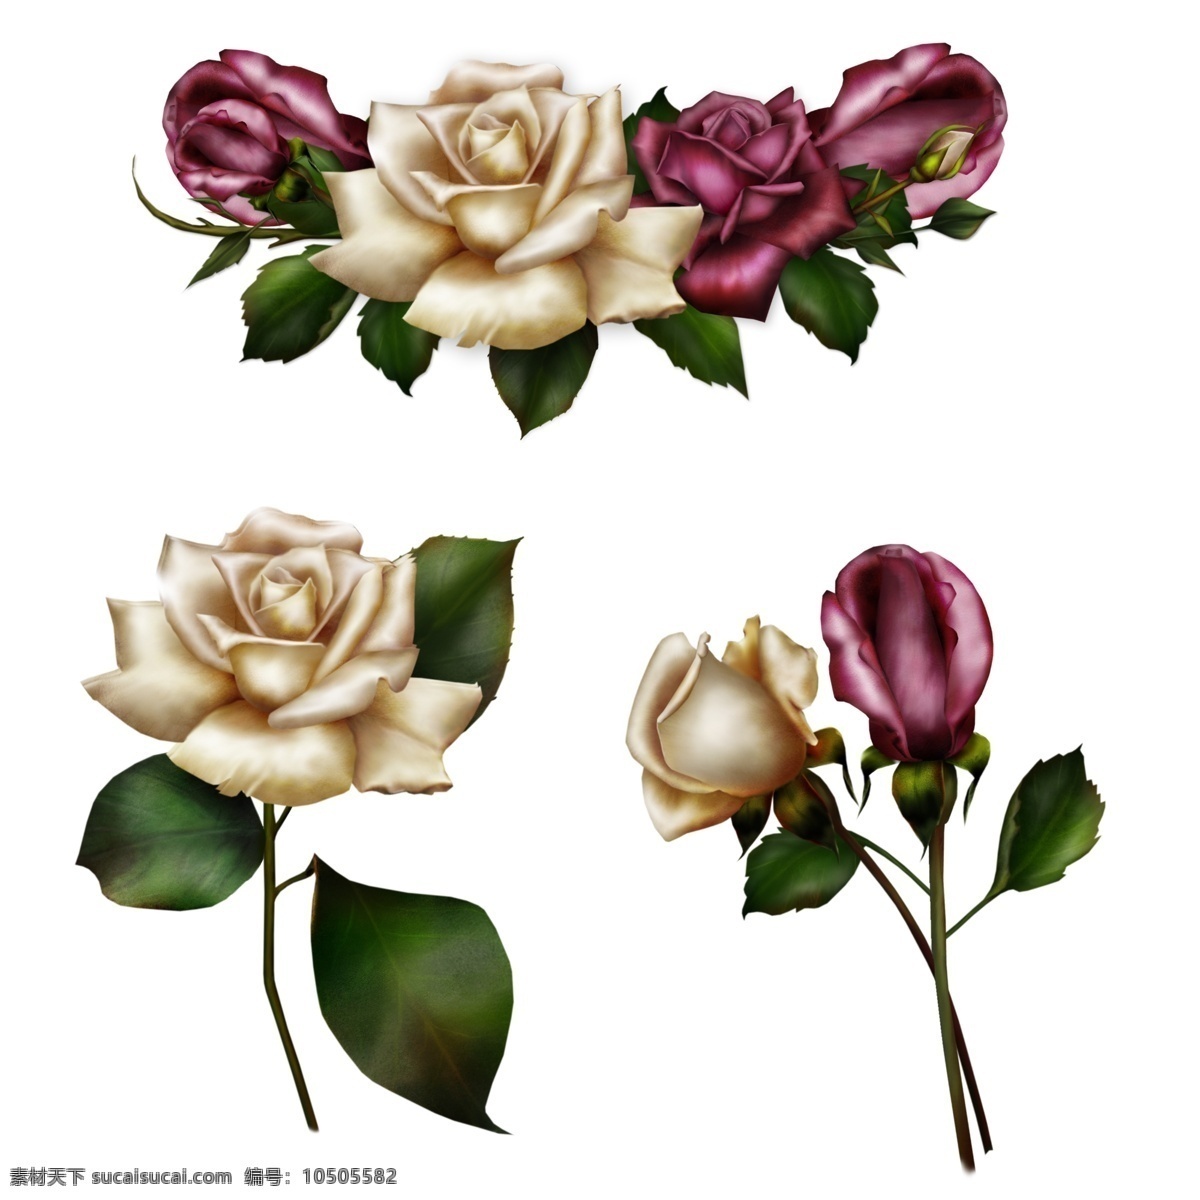 分层 粉红色 红玫瑰 花朵 花卉 花开 花蕾 花束 玫瑰花 模板下载 可爱 花叶 绿叶 鲜花 源文件